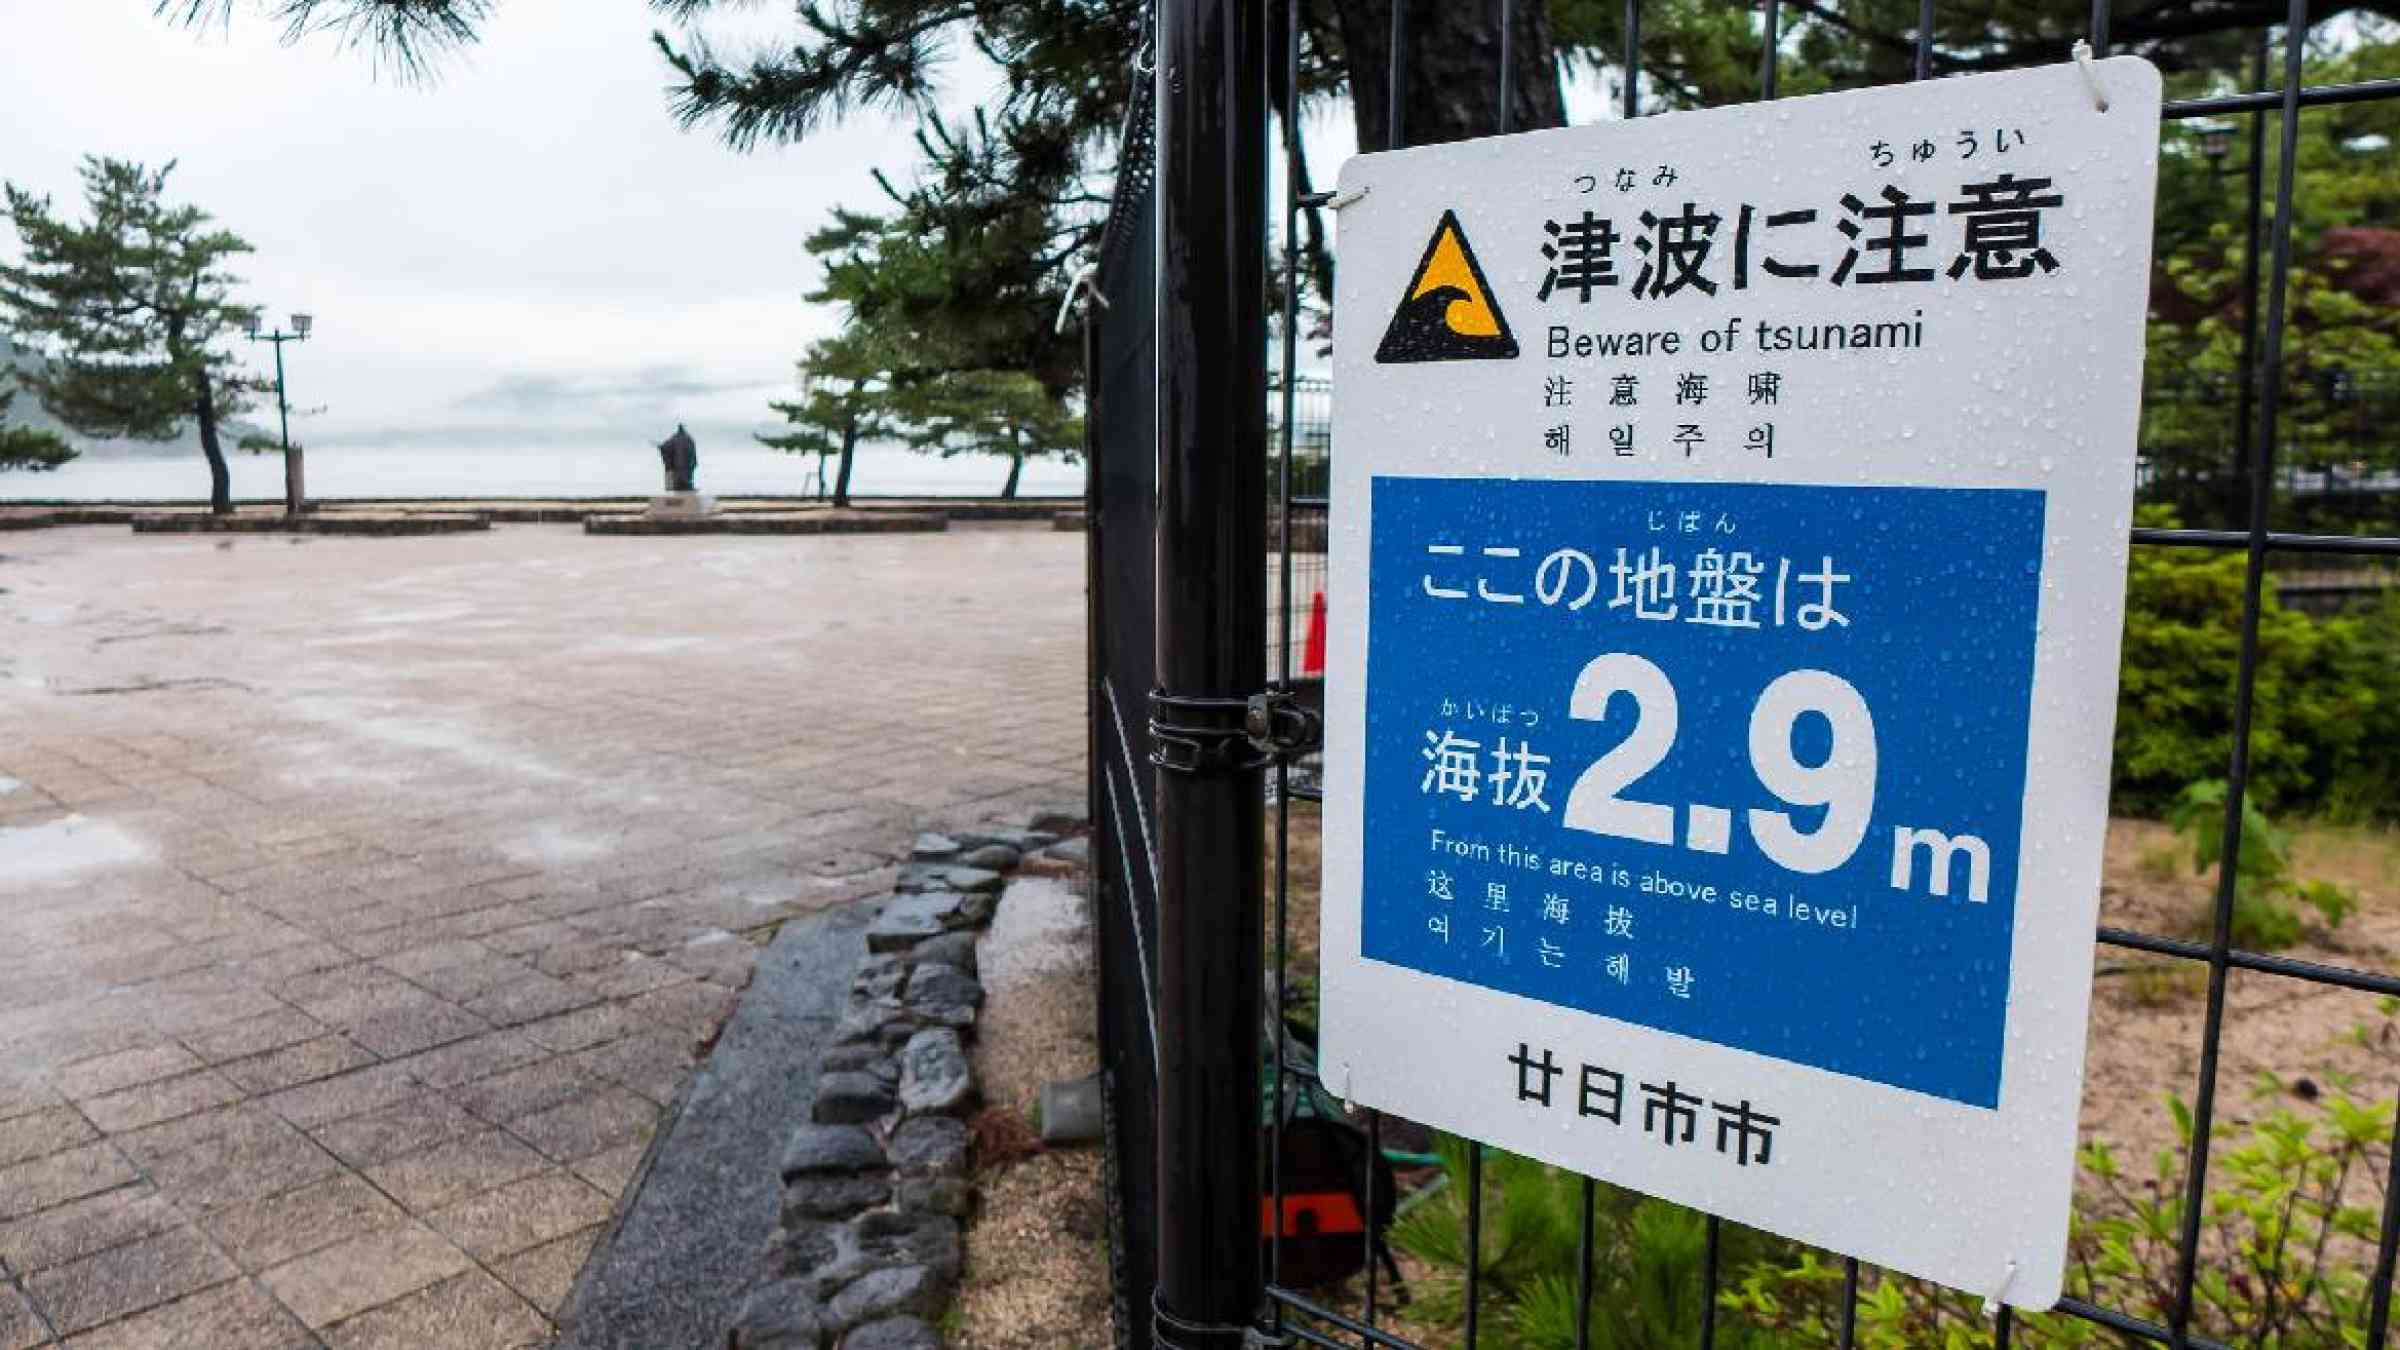 Tsunami warning sign, Miyajima Island, Japan